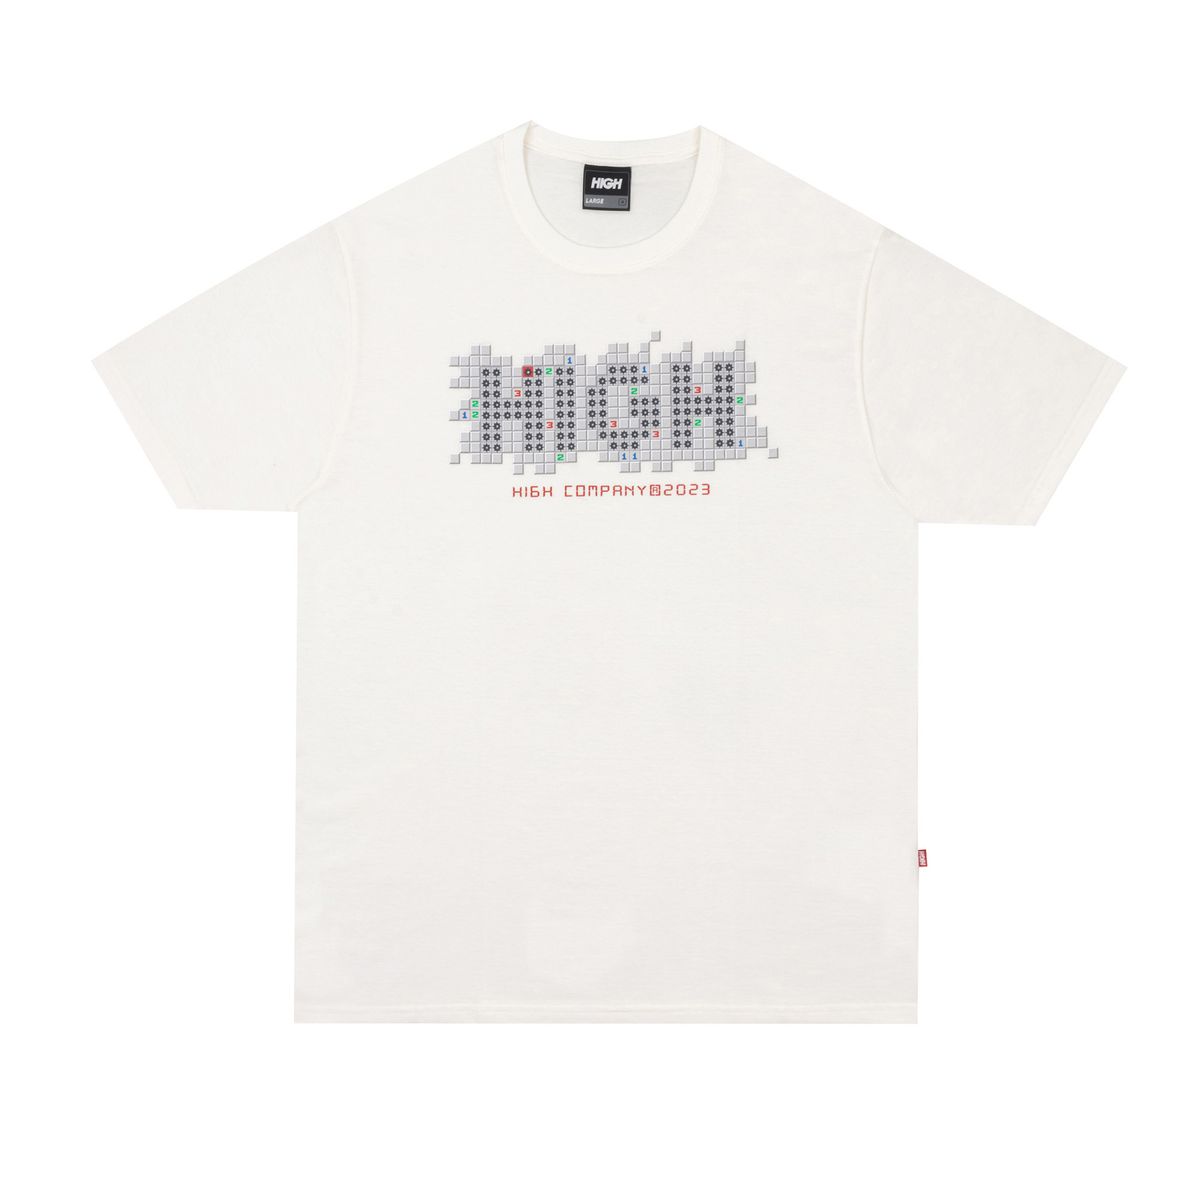 Camiseta High Tee Minesweeper White